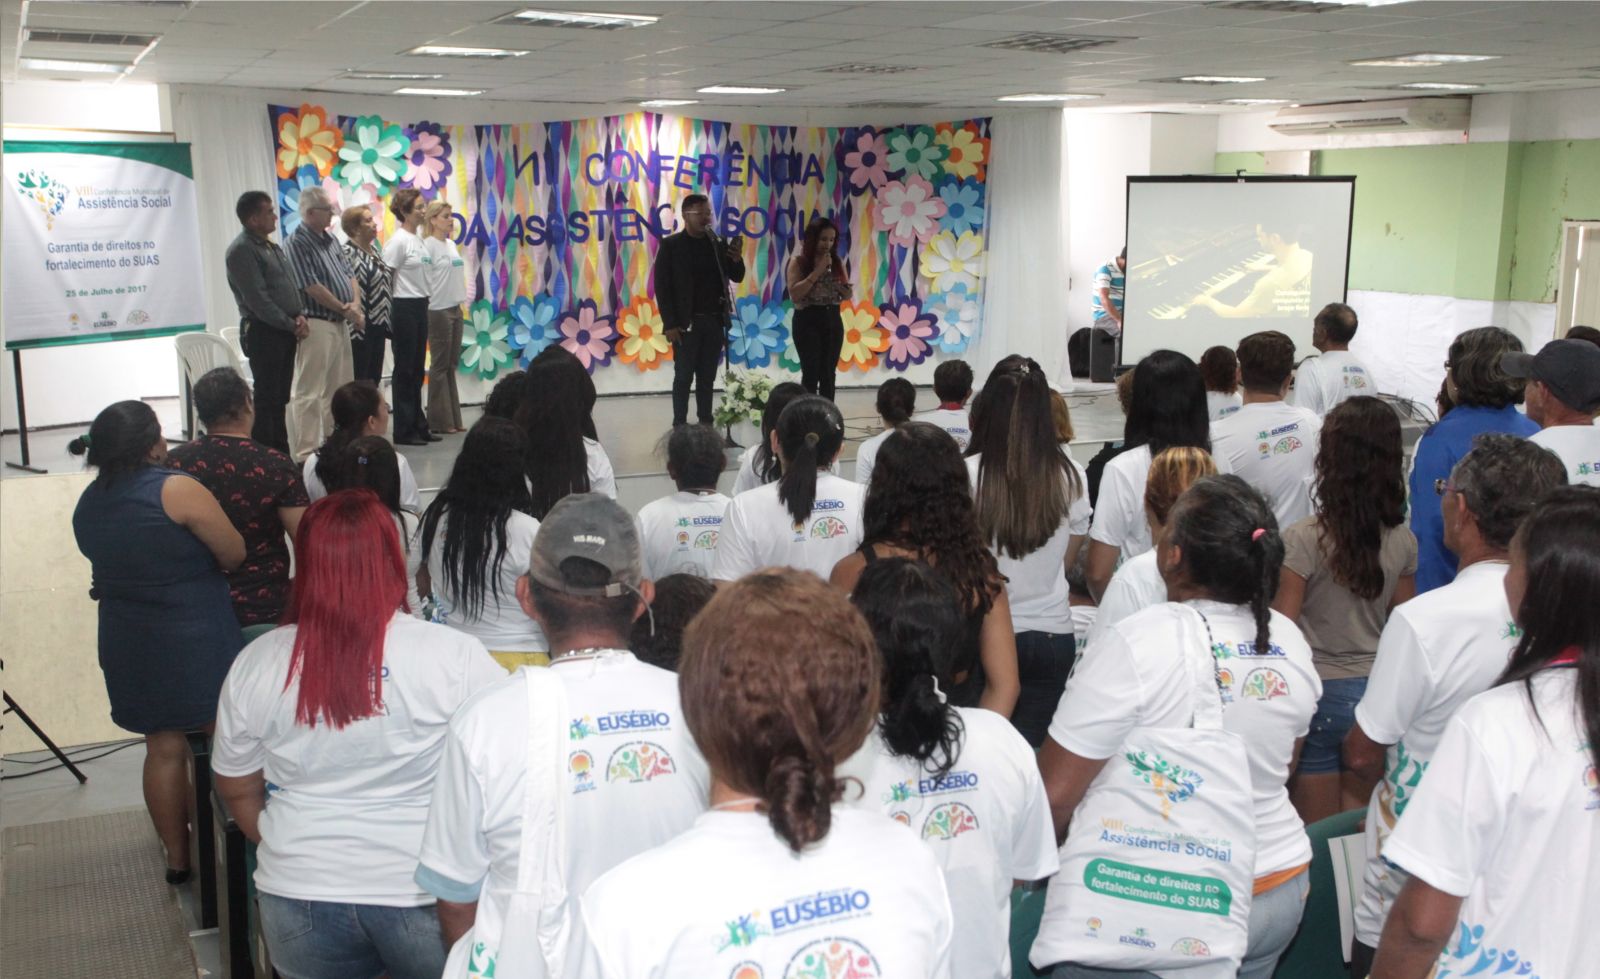 Eusébio realiza a VIII Conferência Municipal de Assistência Social